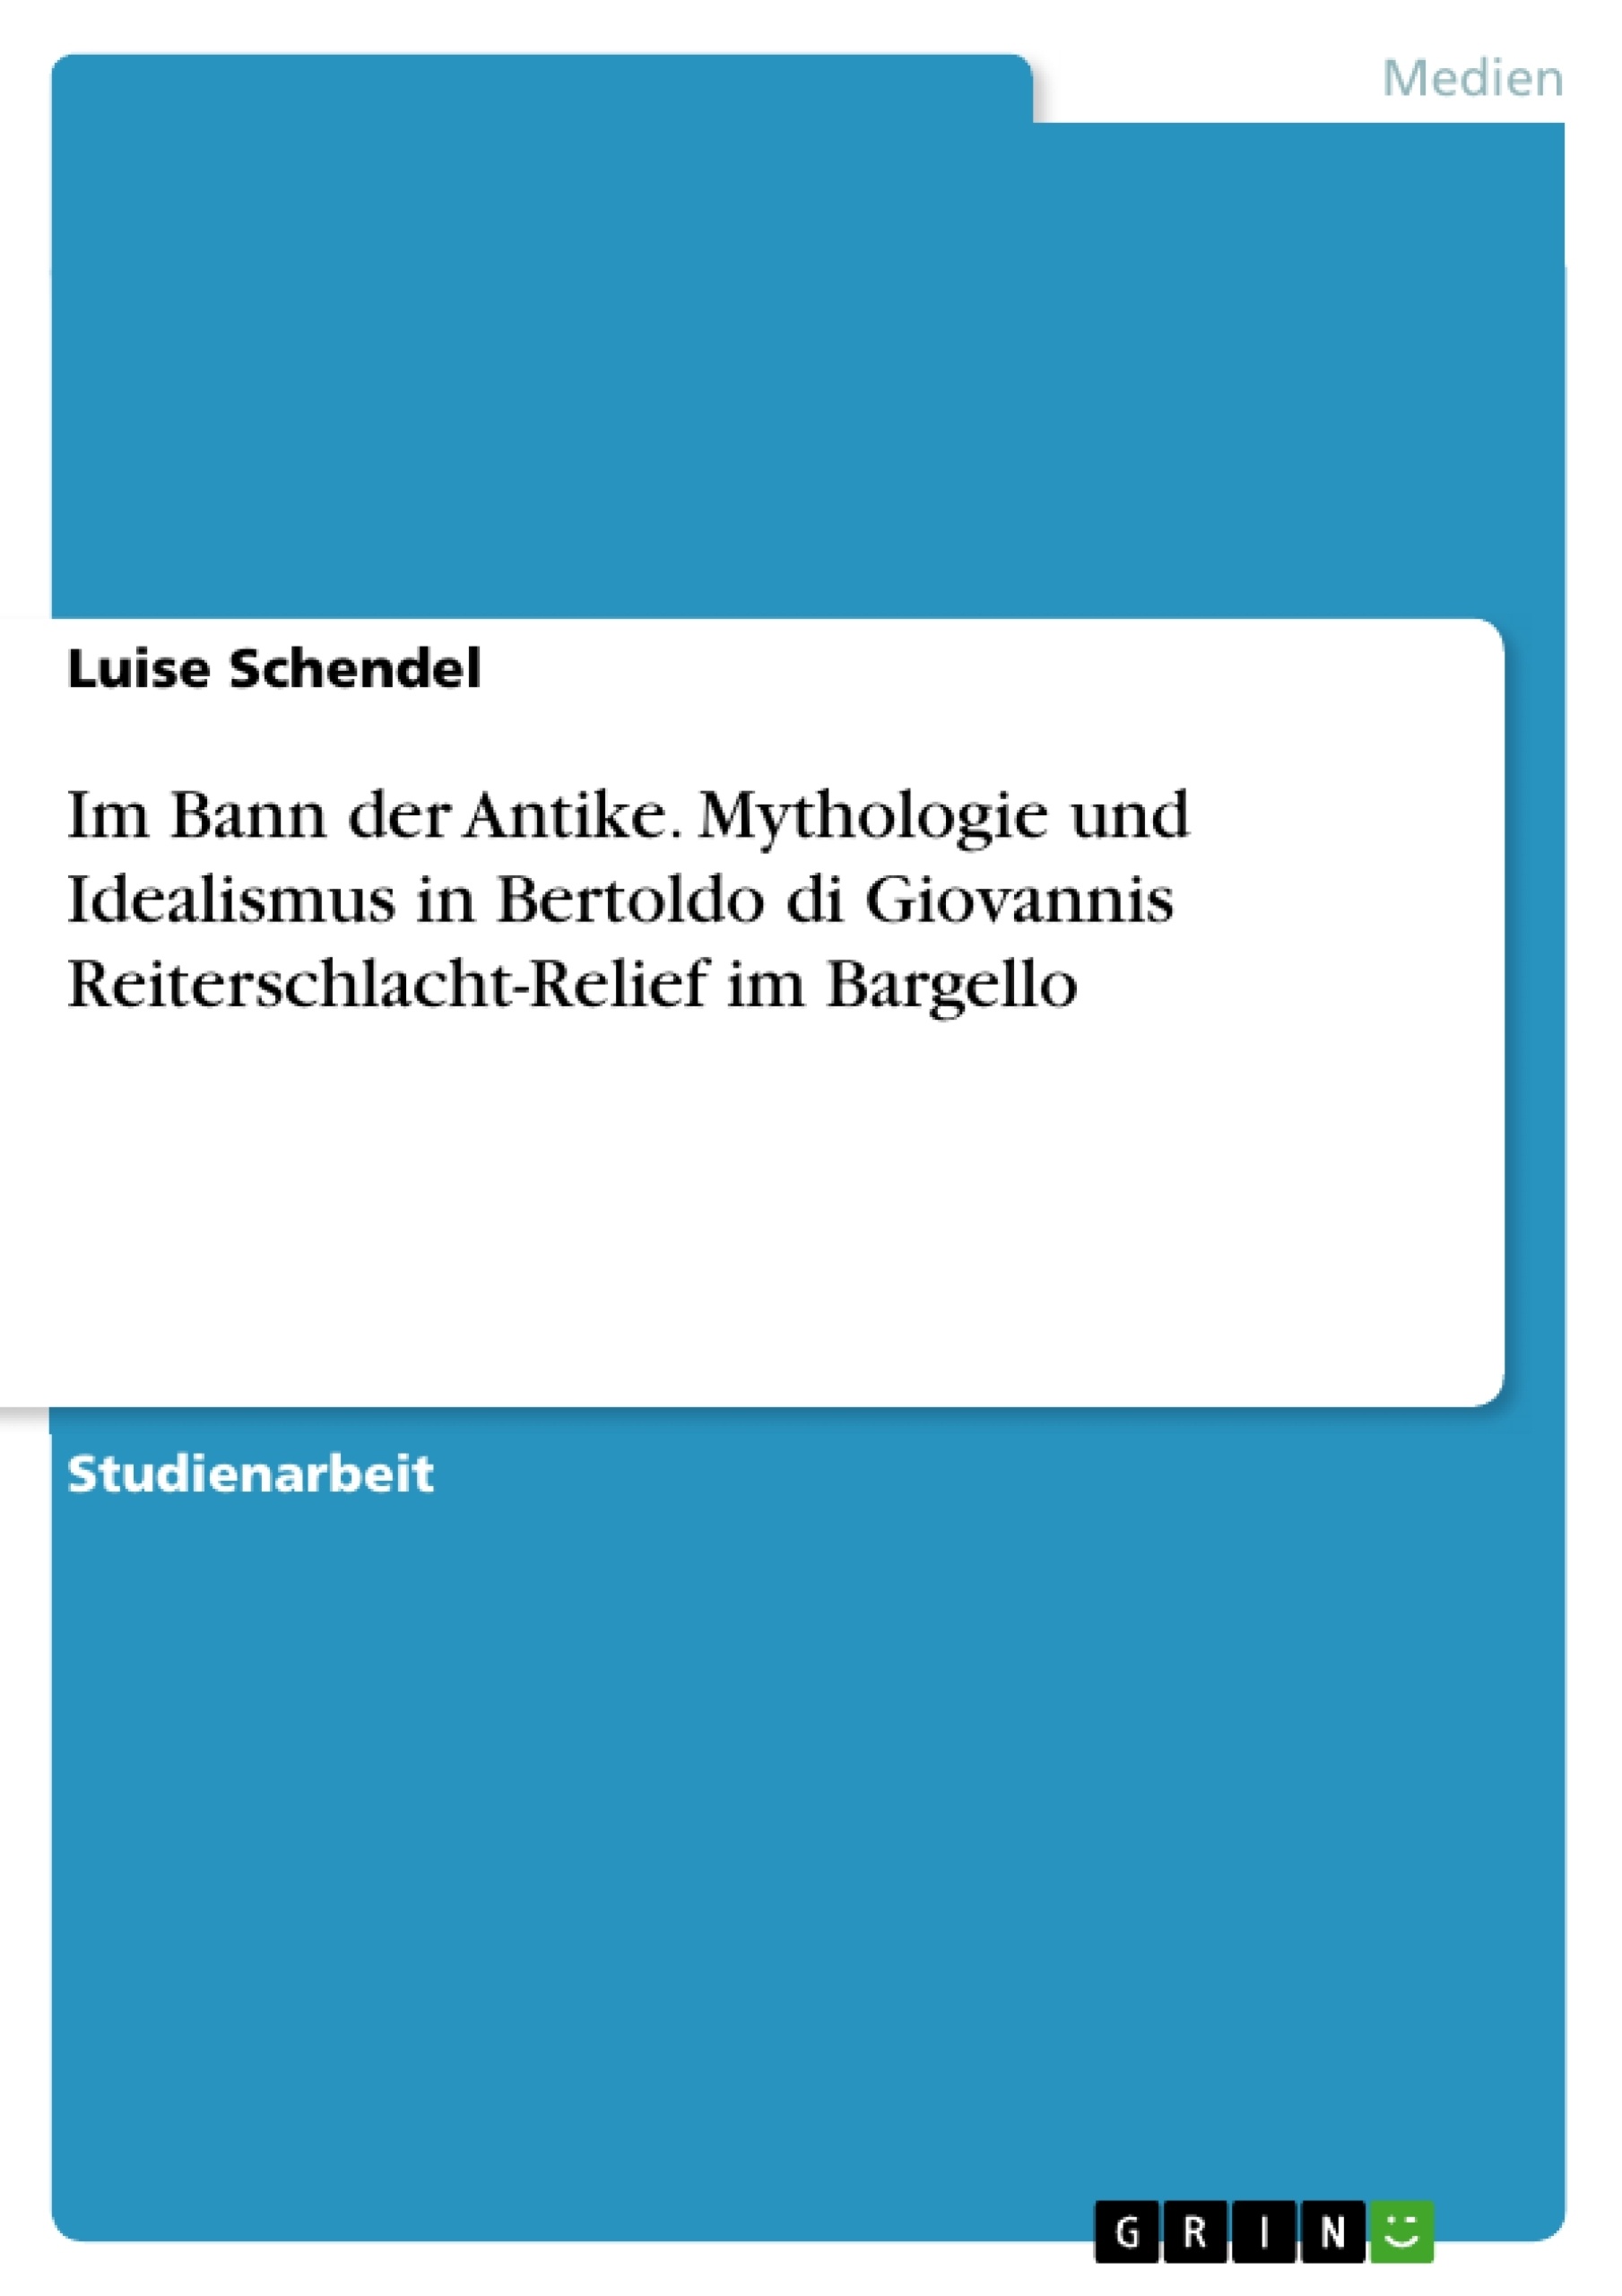 Titre: Im Bann der Antike. Mythologie und Idealismus in Bertoldo di Giovannis Reiterschlacht-Relief im Bargello